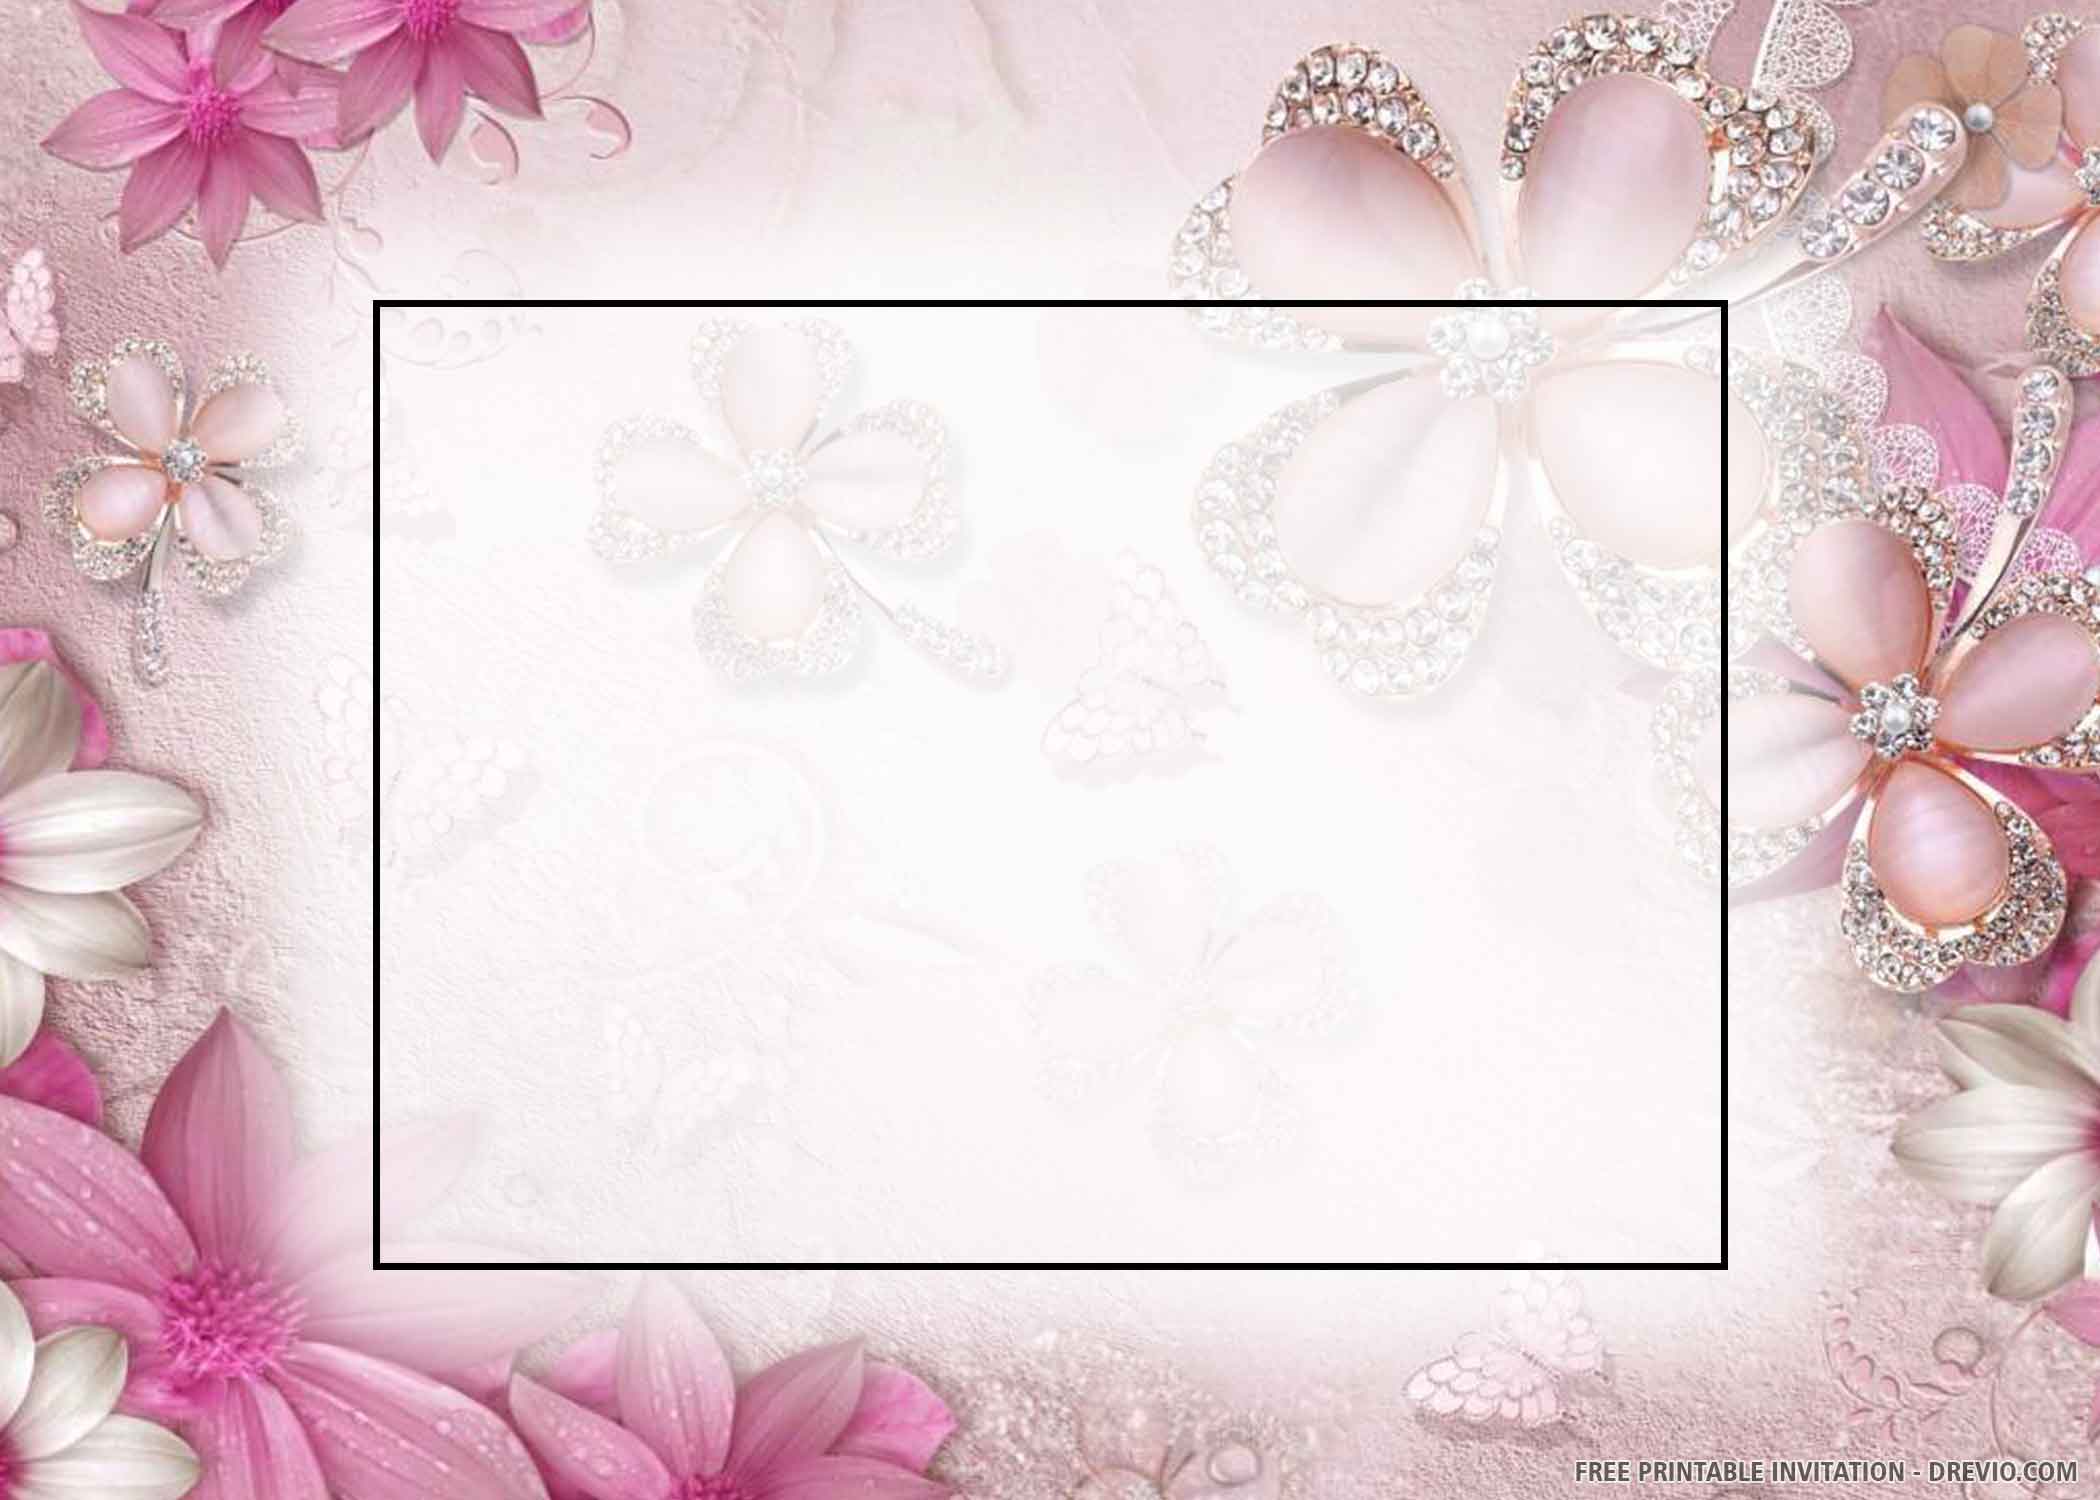 update-91-imagen-elegant-wedding-invitation-background-designs